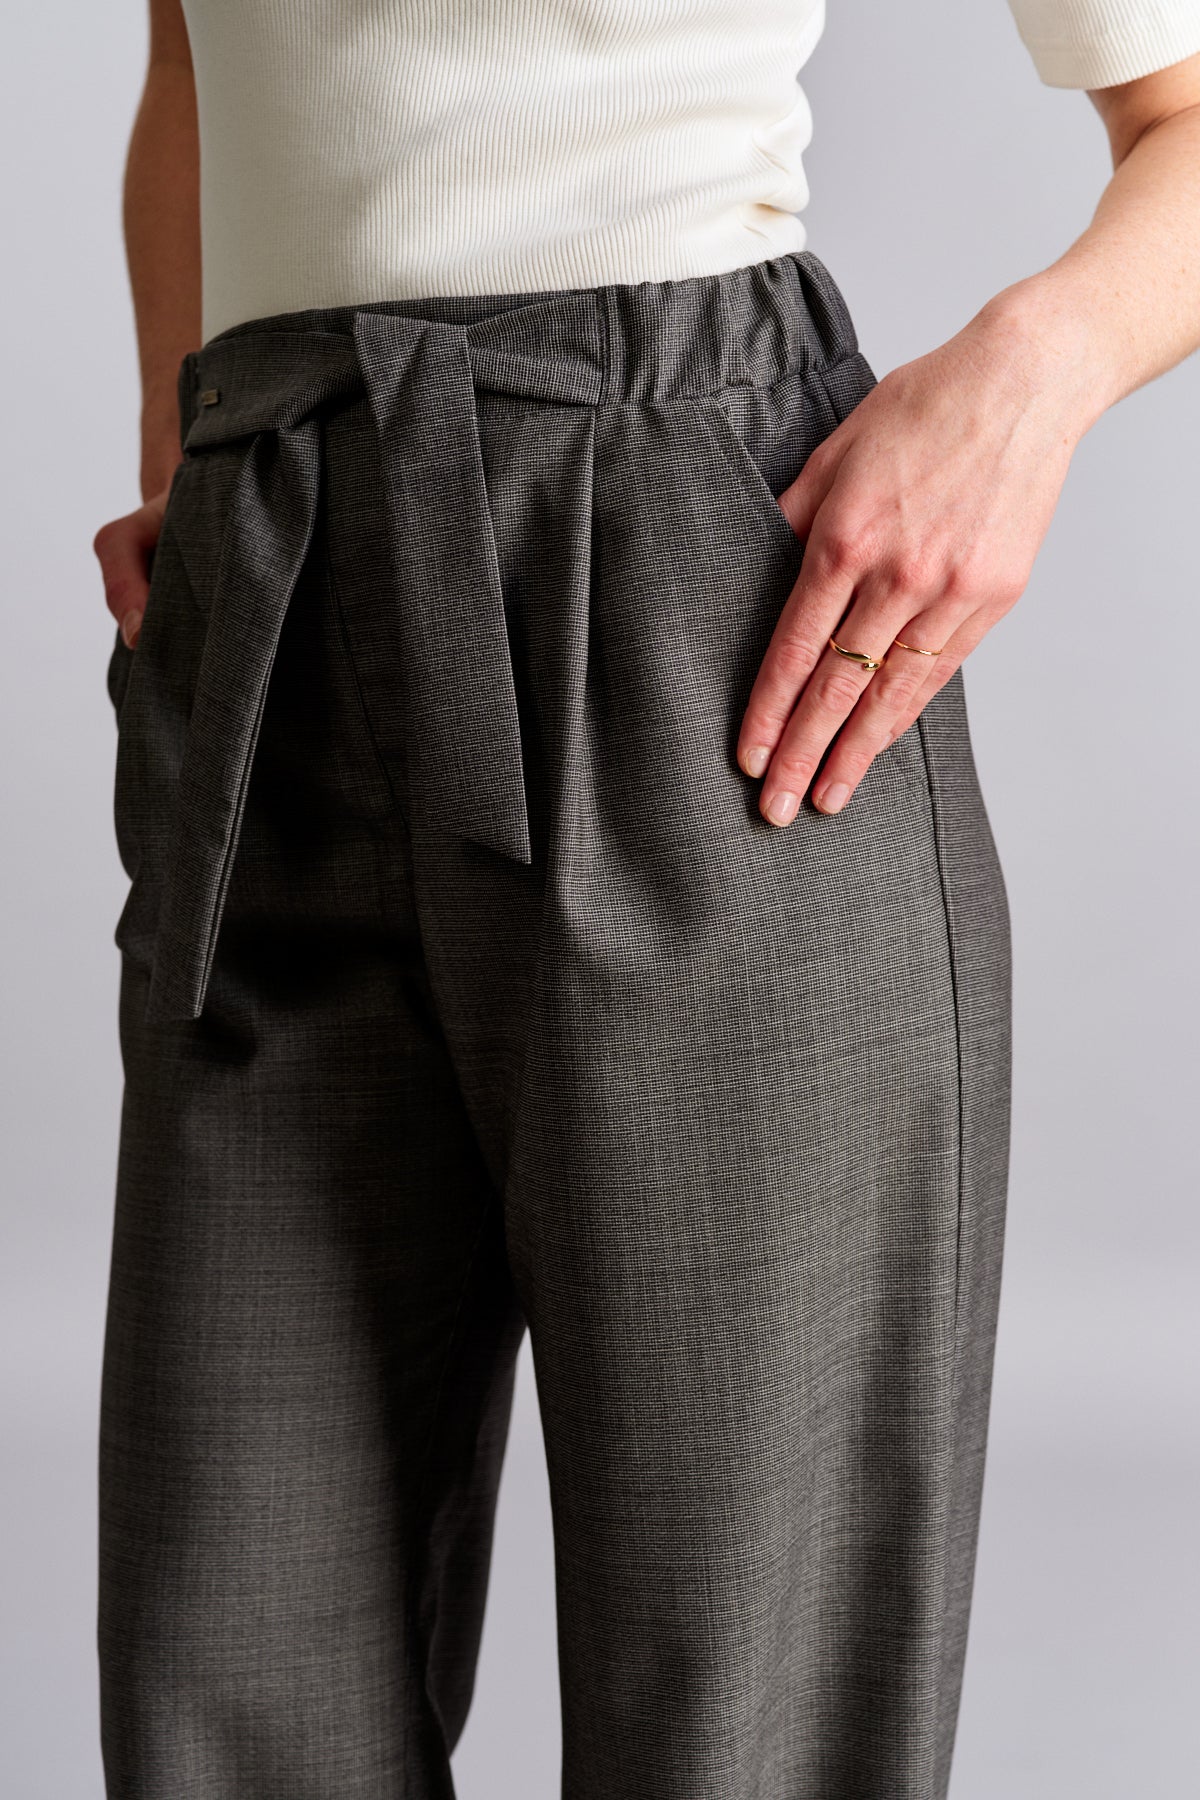 Kalhoty z prémiové vlny - se zavazováním - šedé